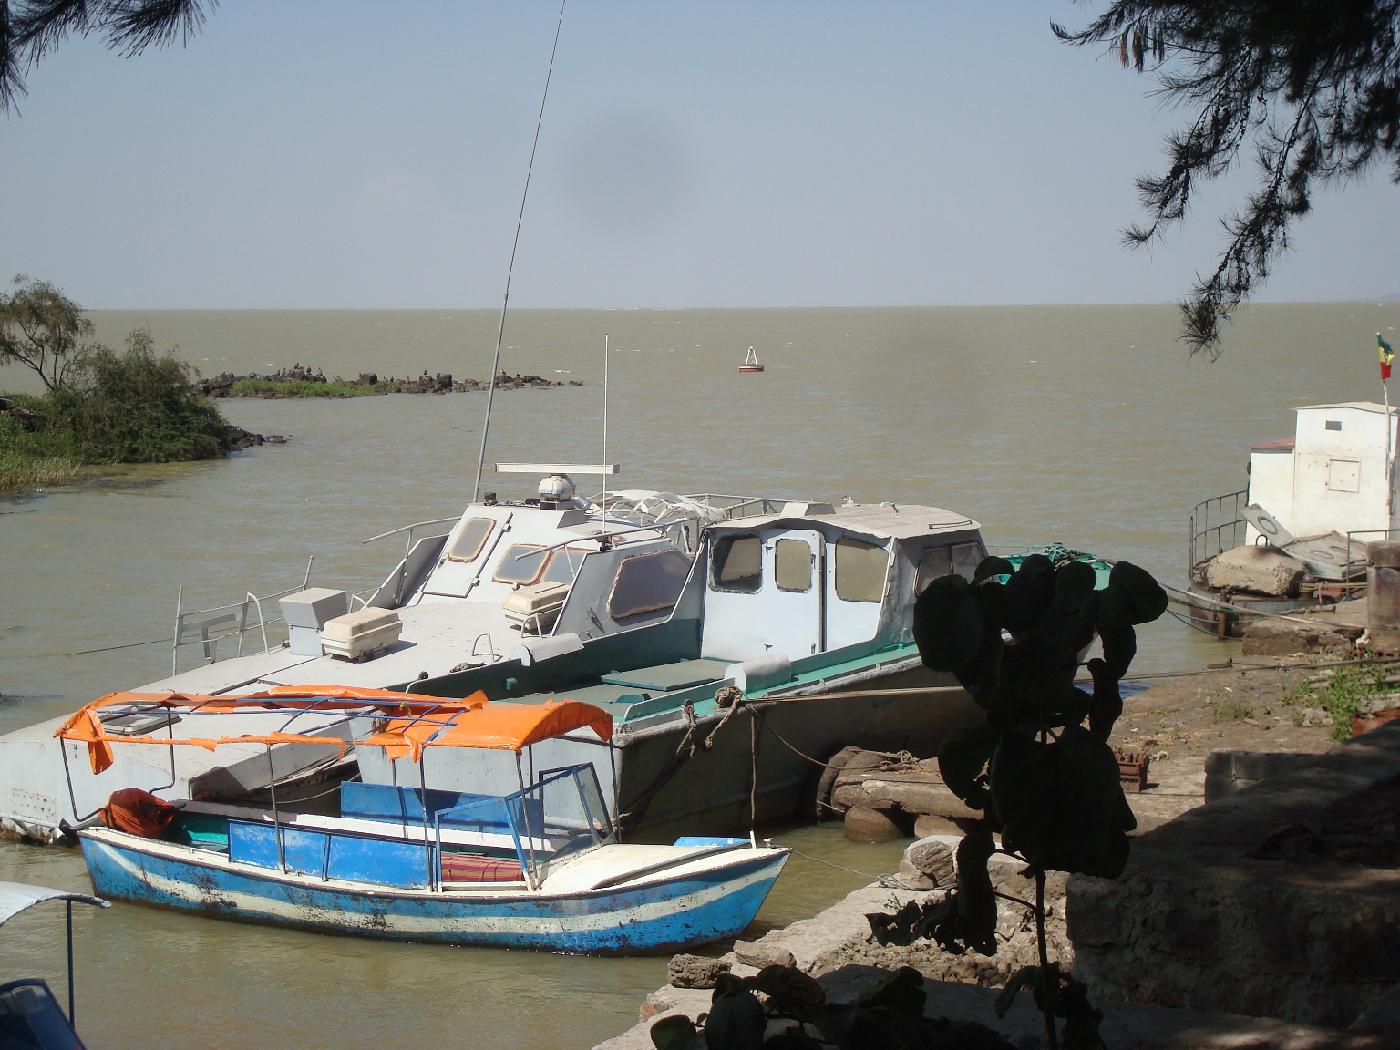 DSC033880.jpg - Embarcations sur le Lac Tana  Bahar Dar, nom qui signifie bord de mer